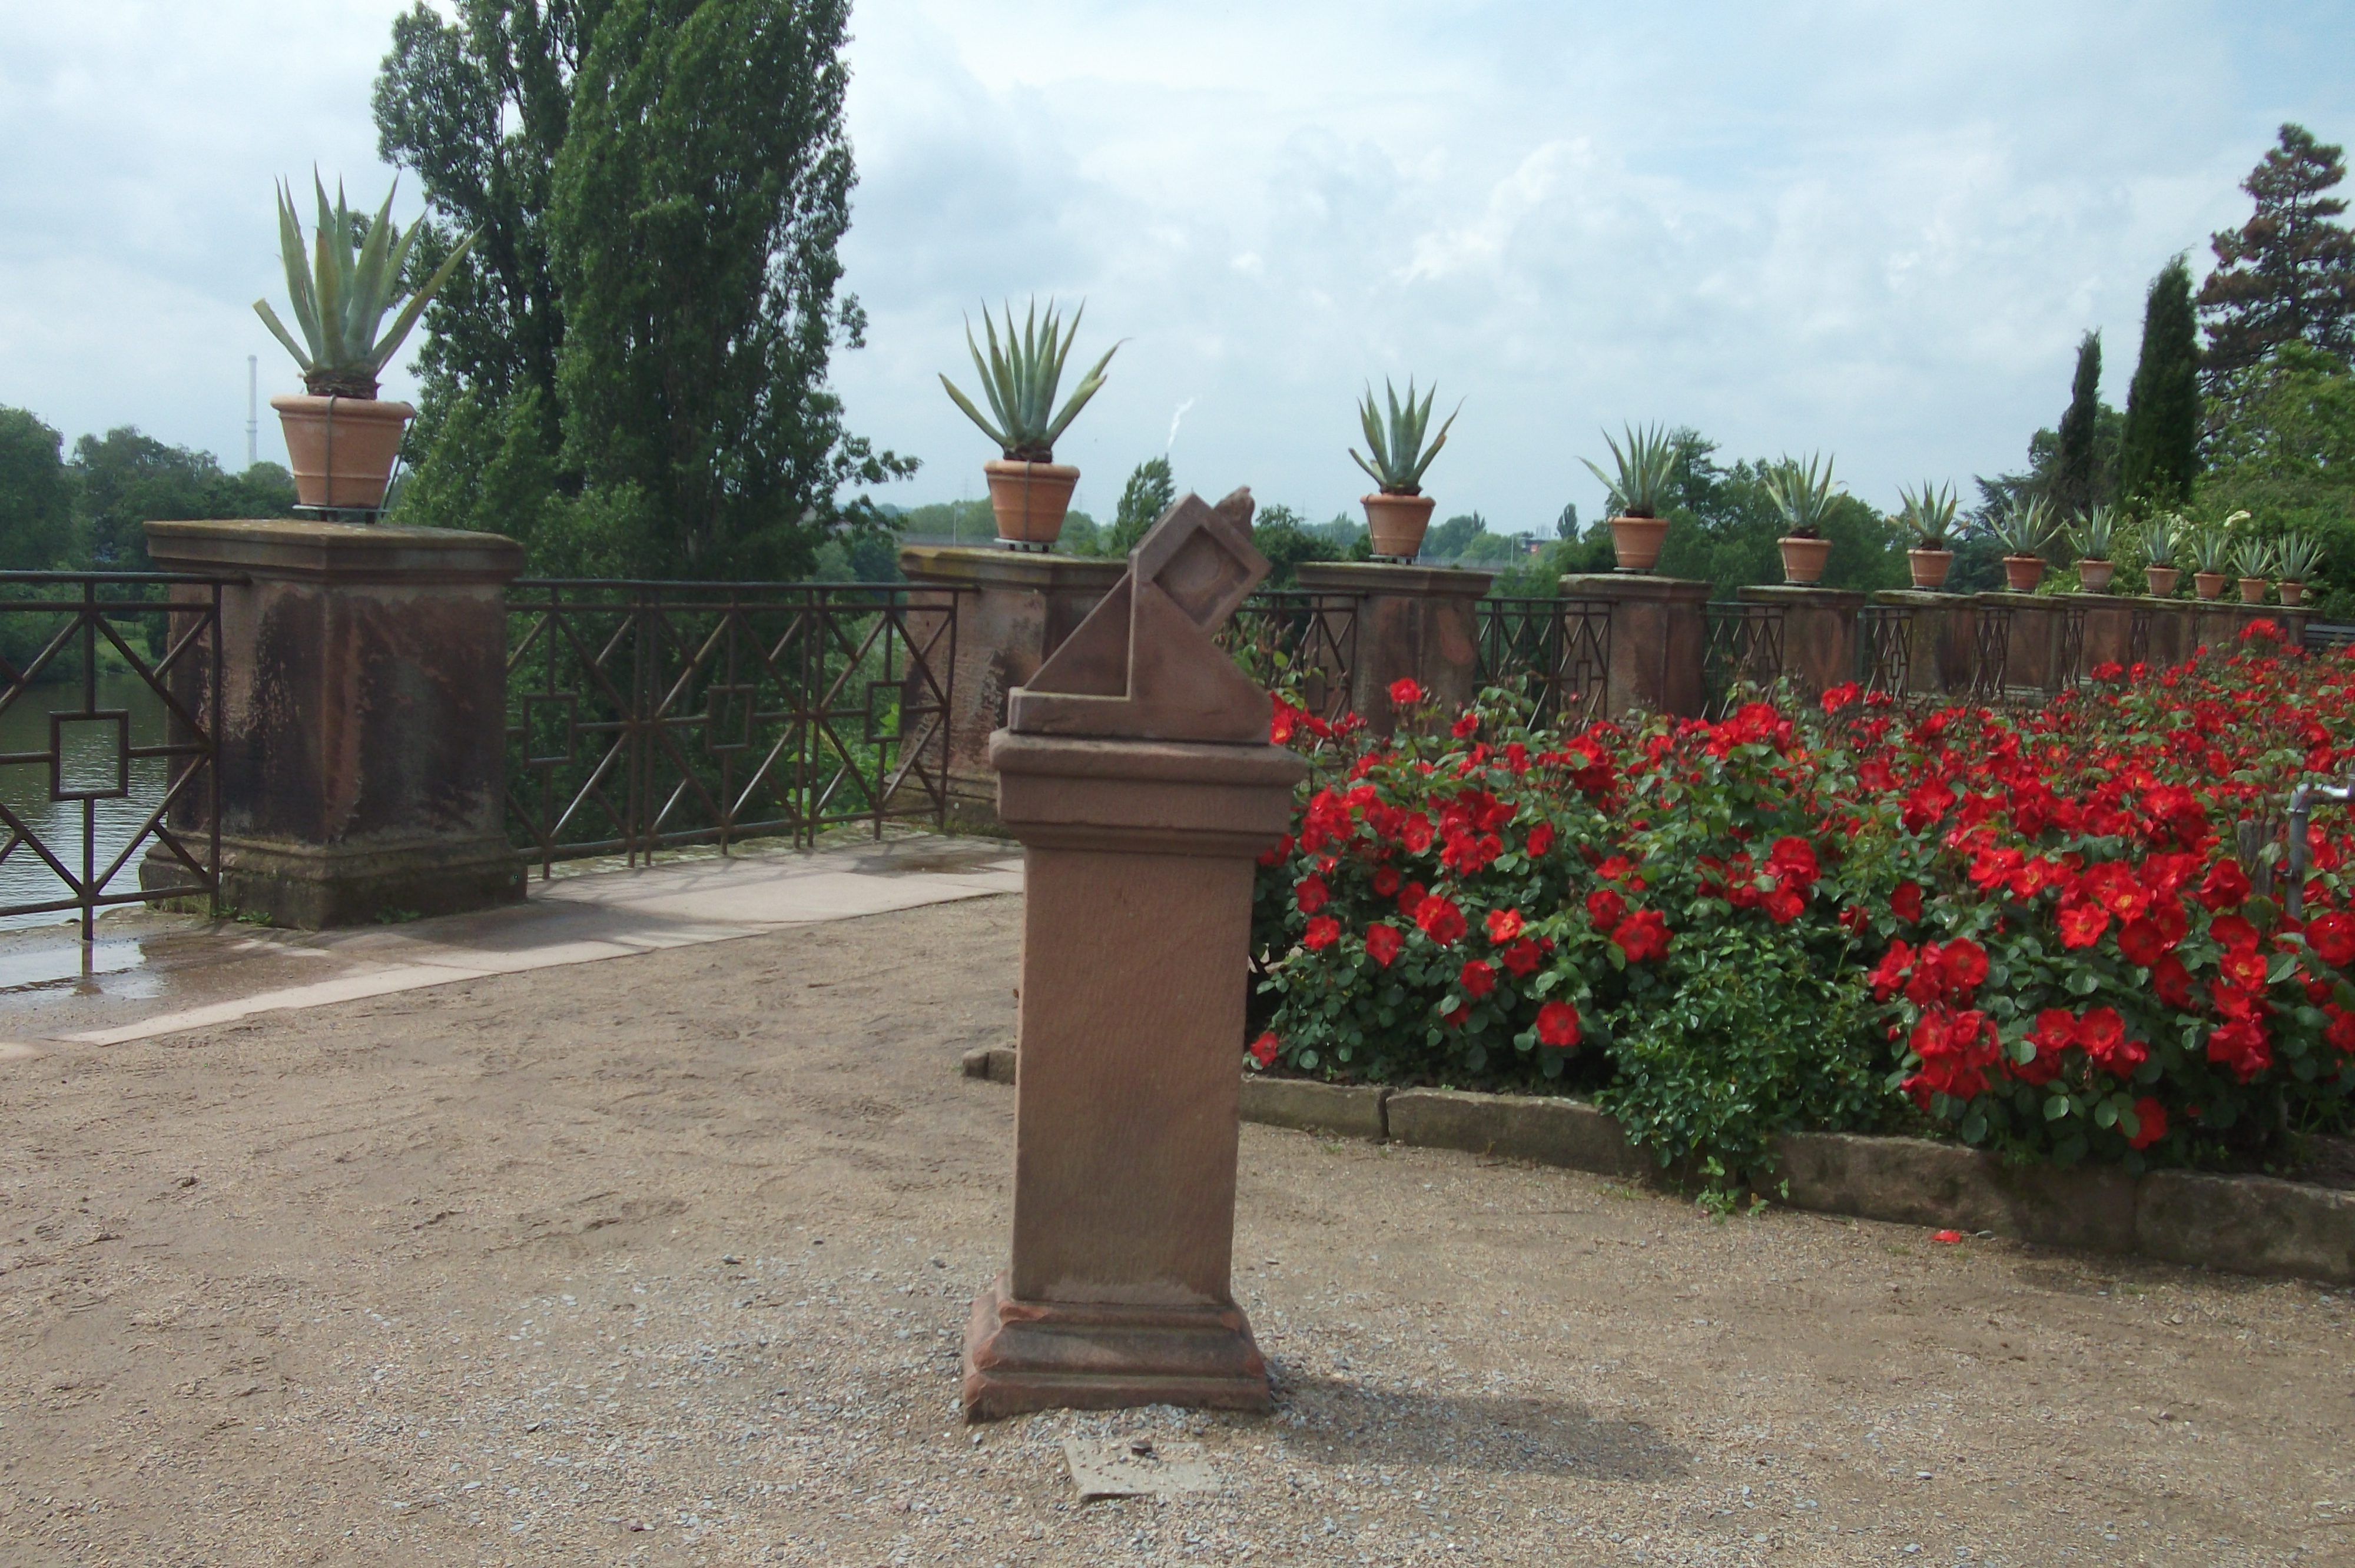 Garten am Pompeaneum vom Main aus gesehen